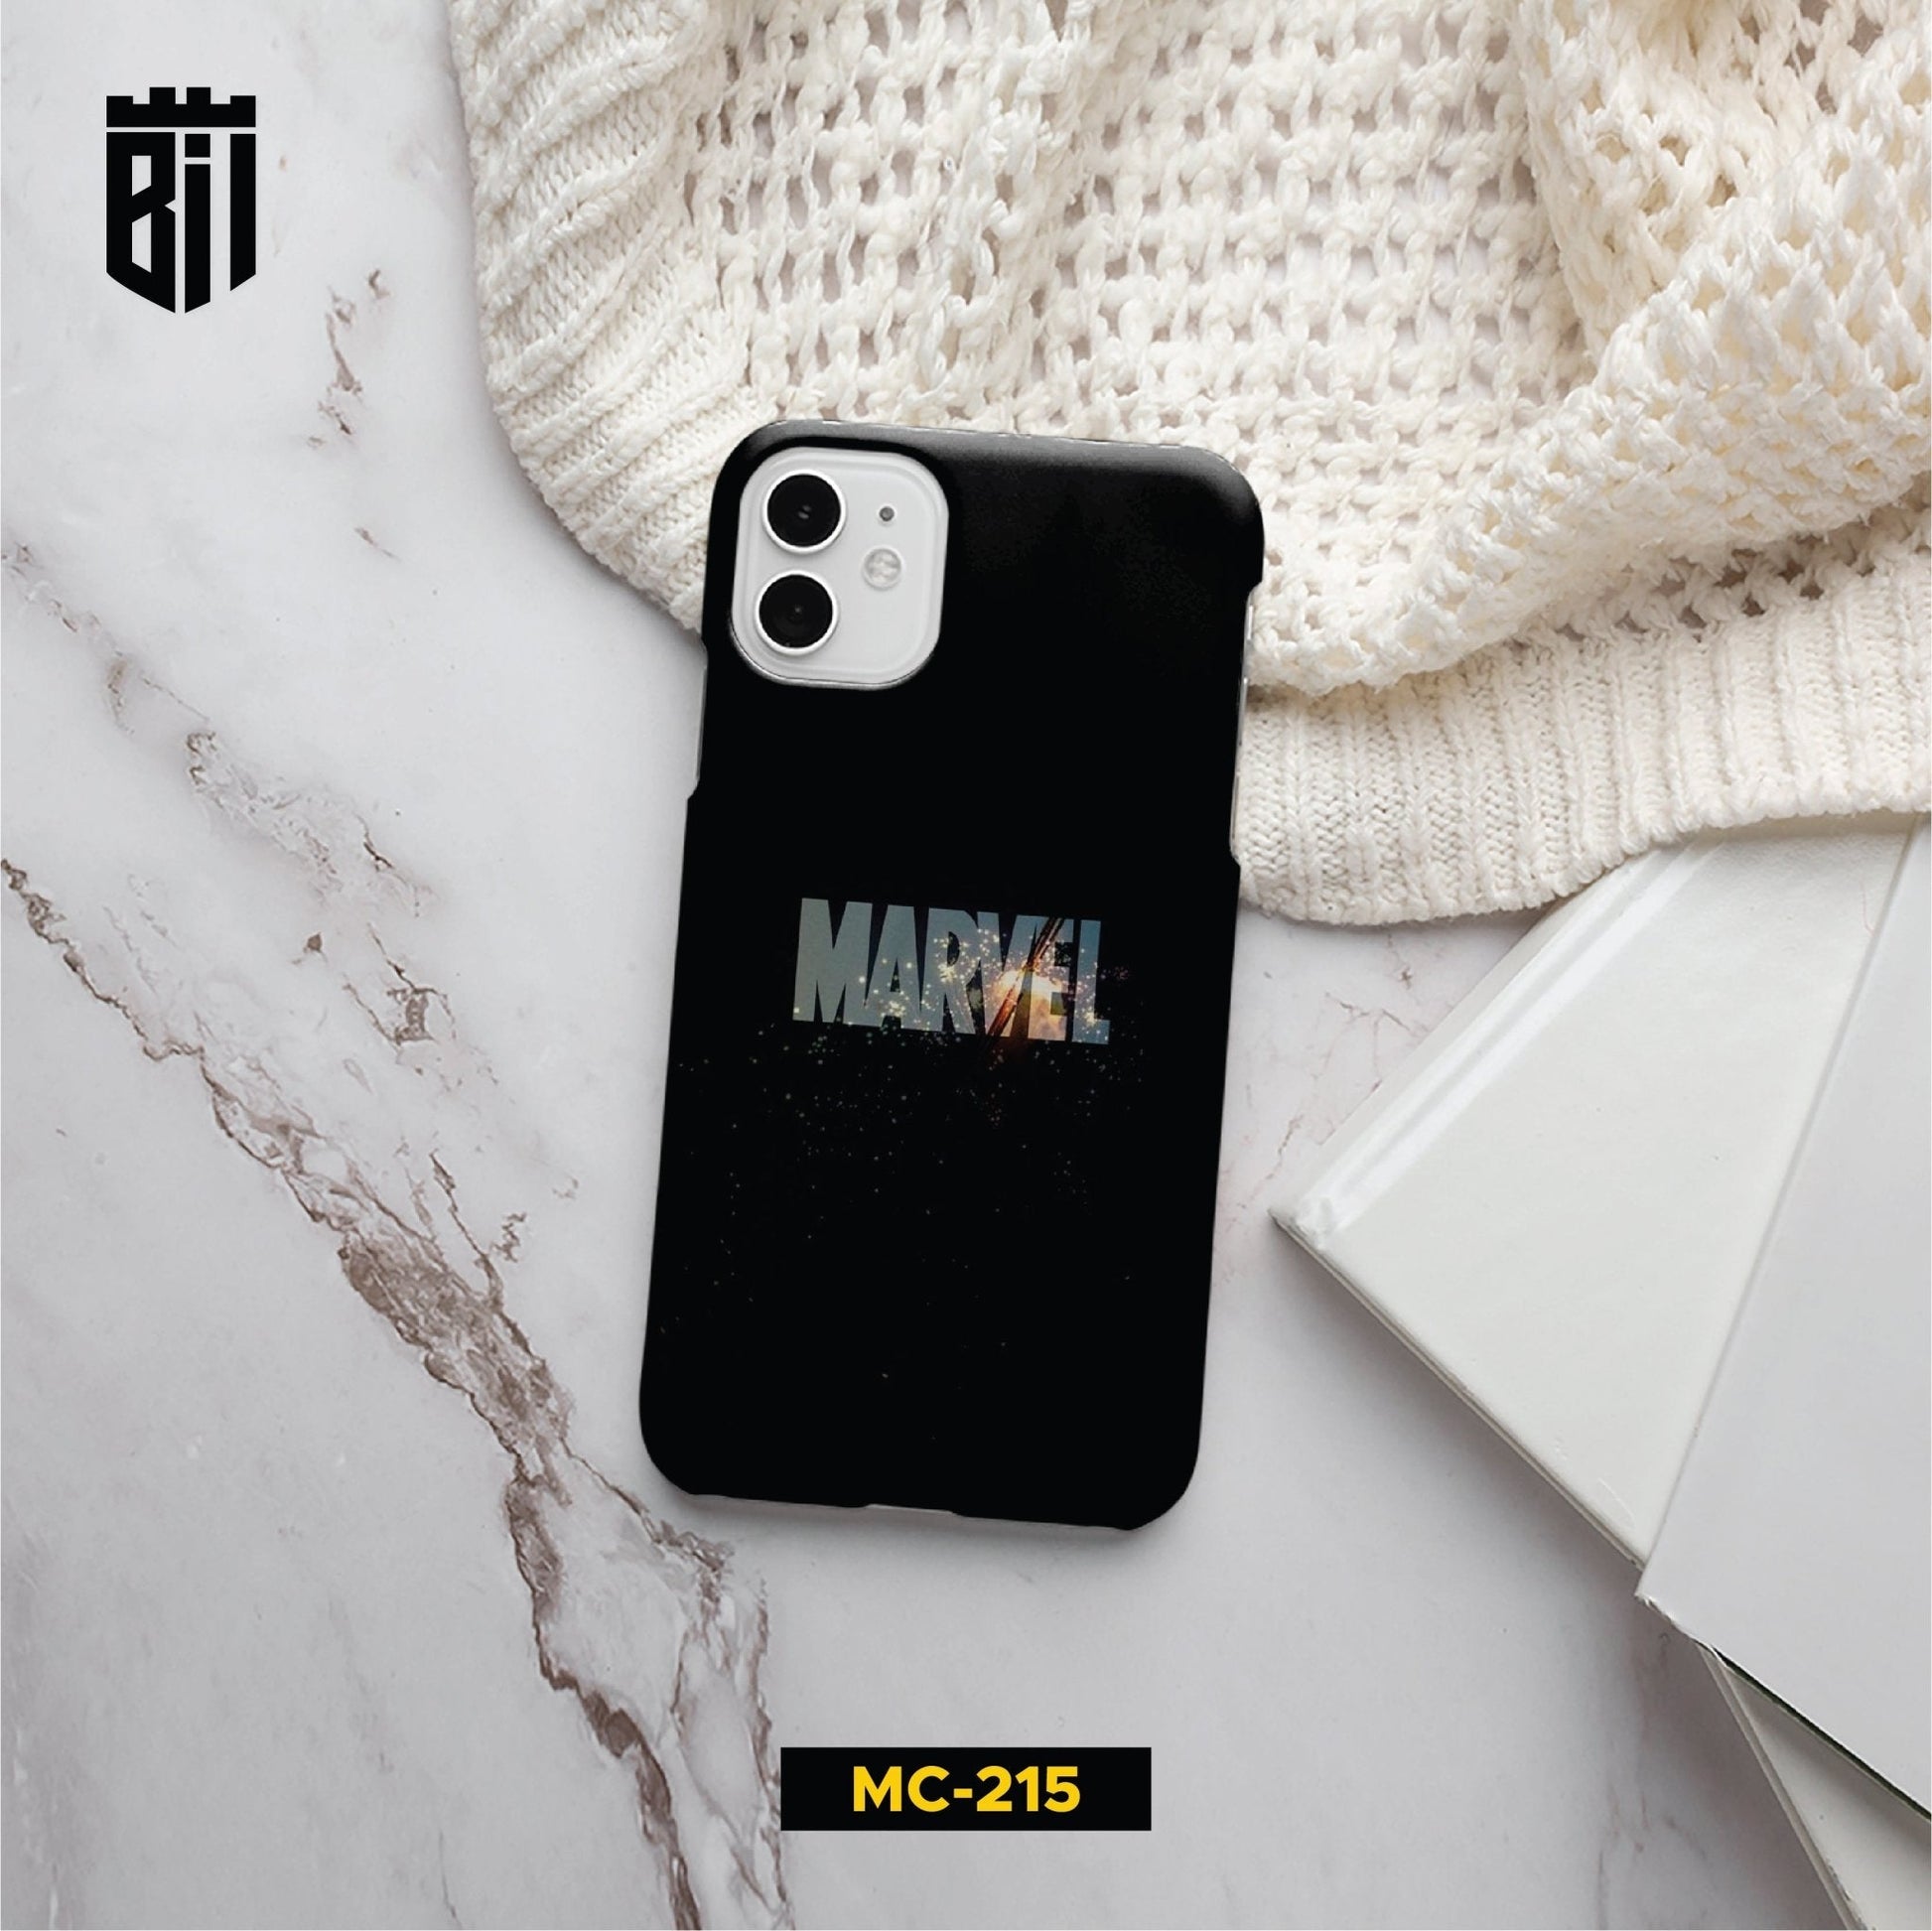 MC215 Marvel Mobile Case - BREACHIT